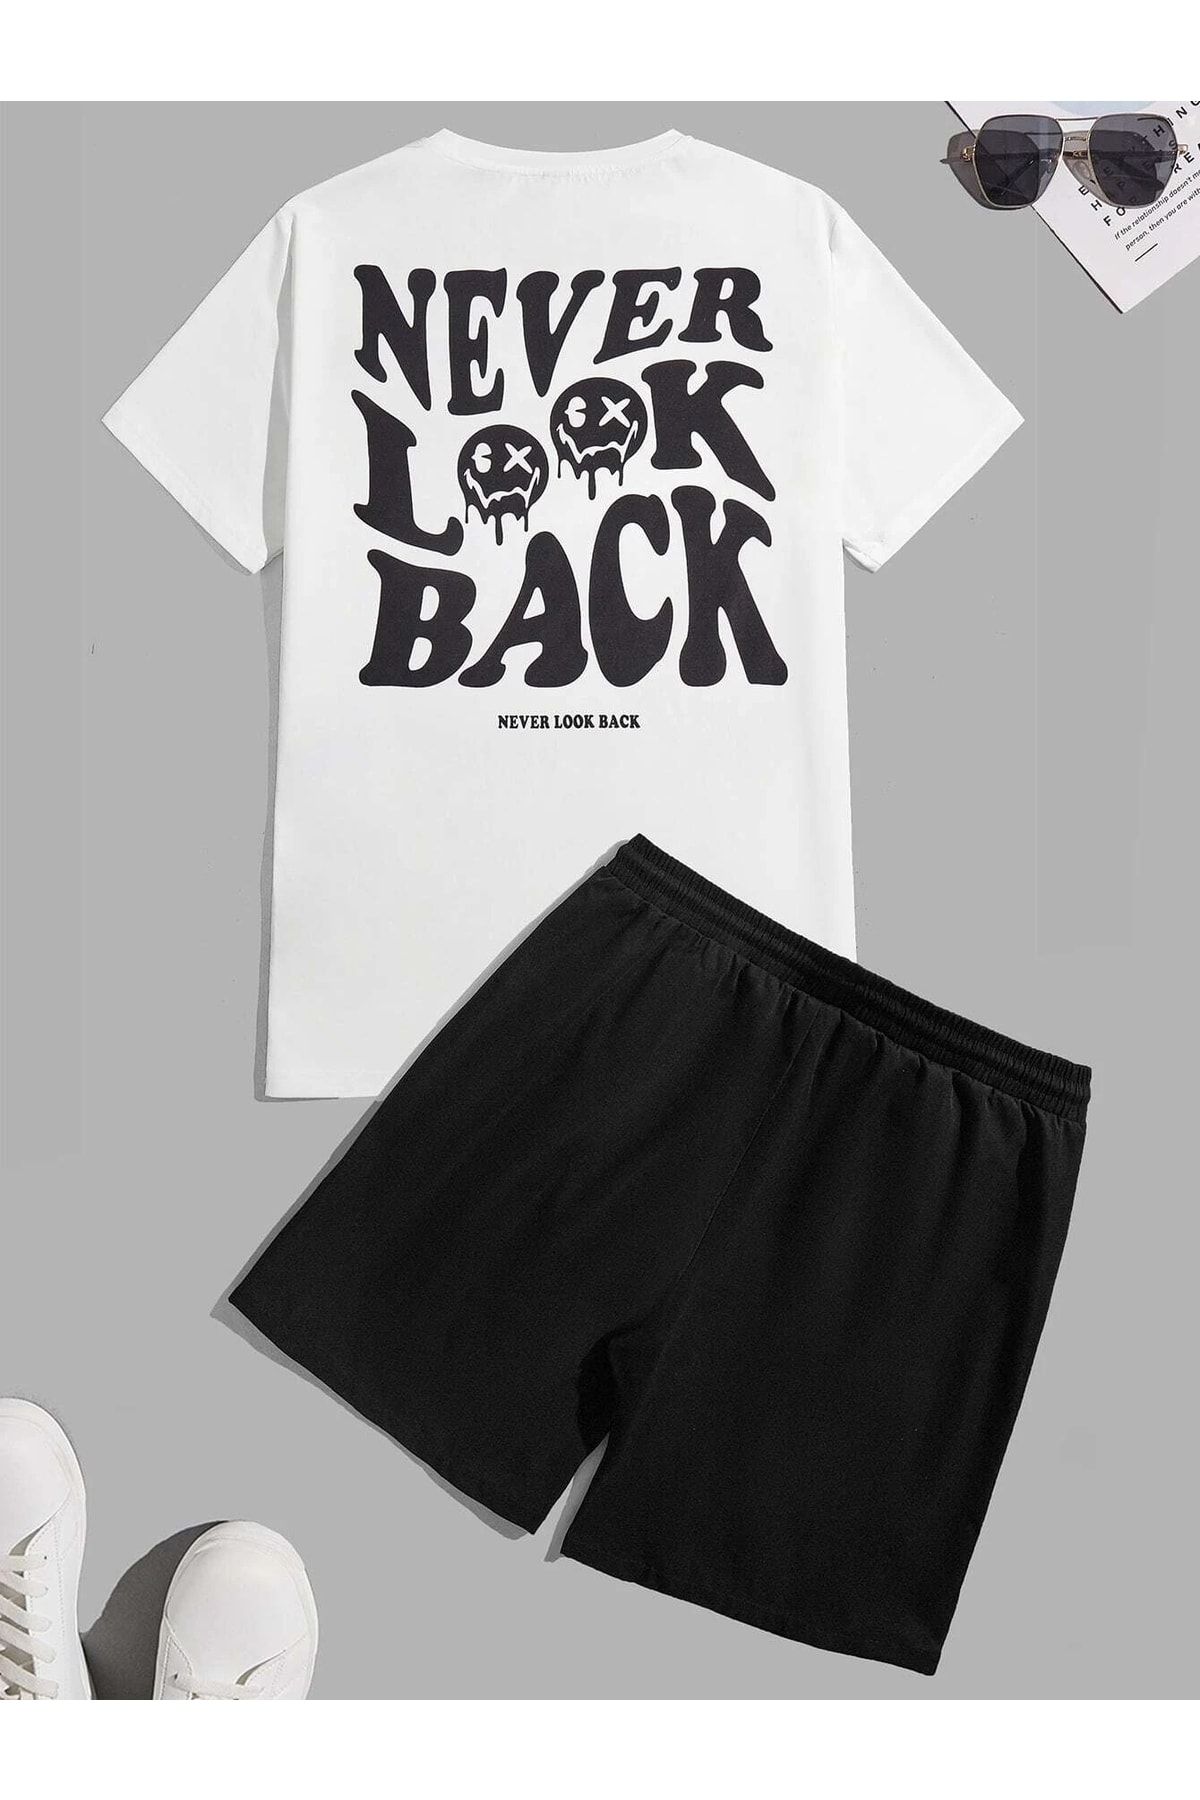 DUBU BUTİK Never Look Back T-shirt Şort - Beyaz Siyah Alt Üst Takım Şort Tişört Kombin Baskılı Bisiklet Yaka